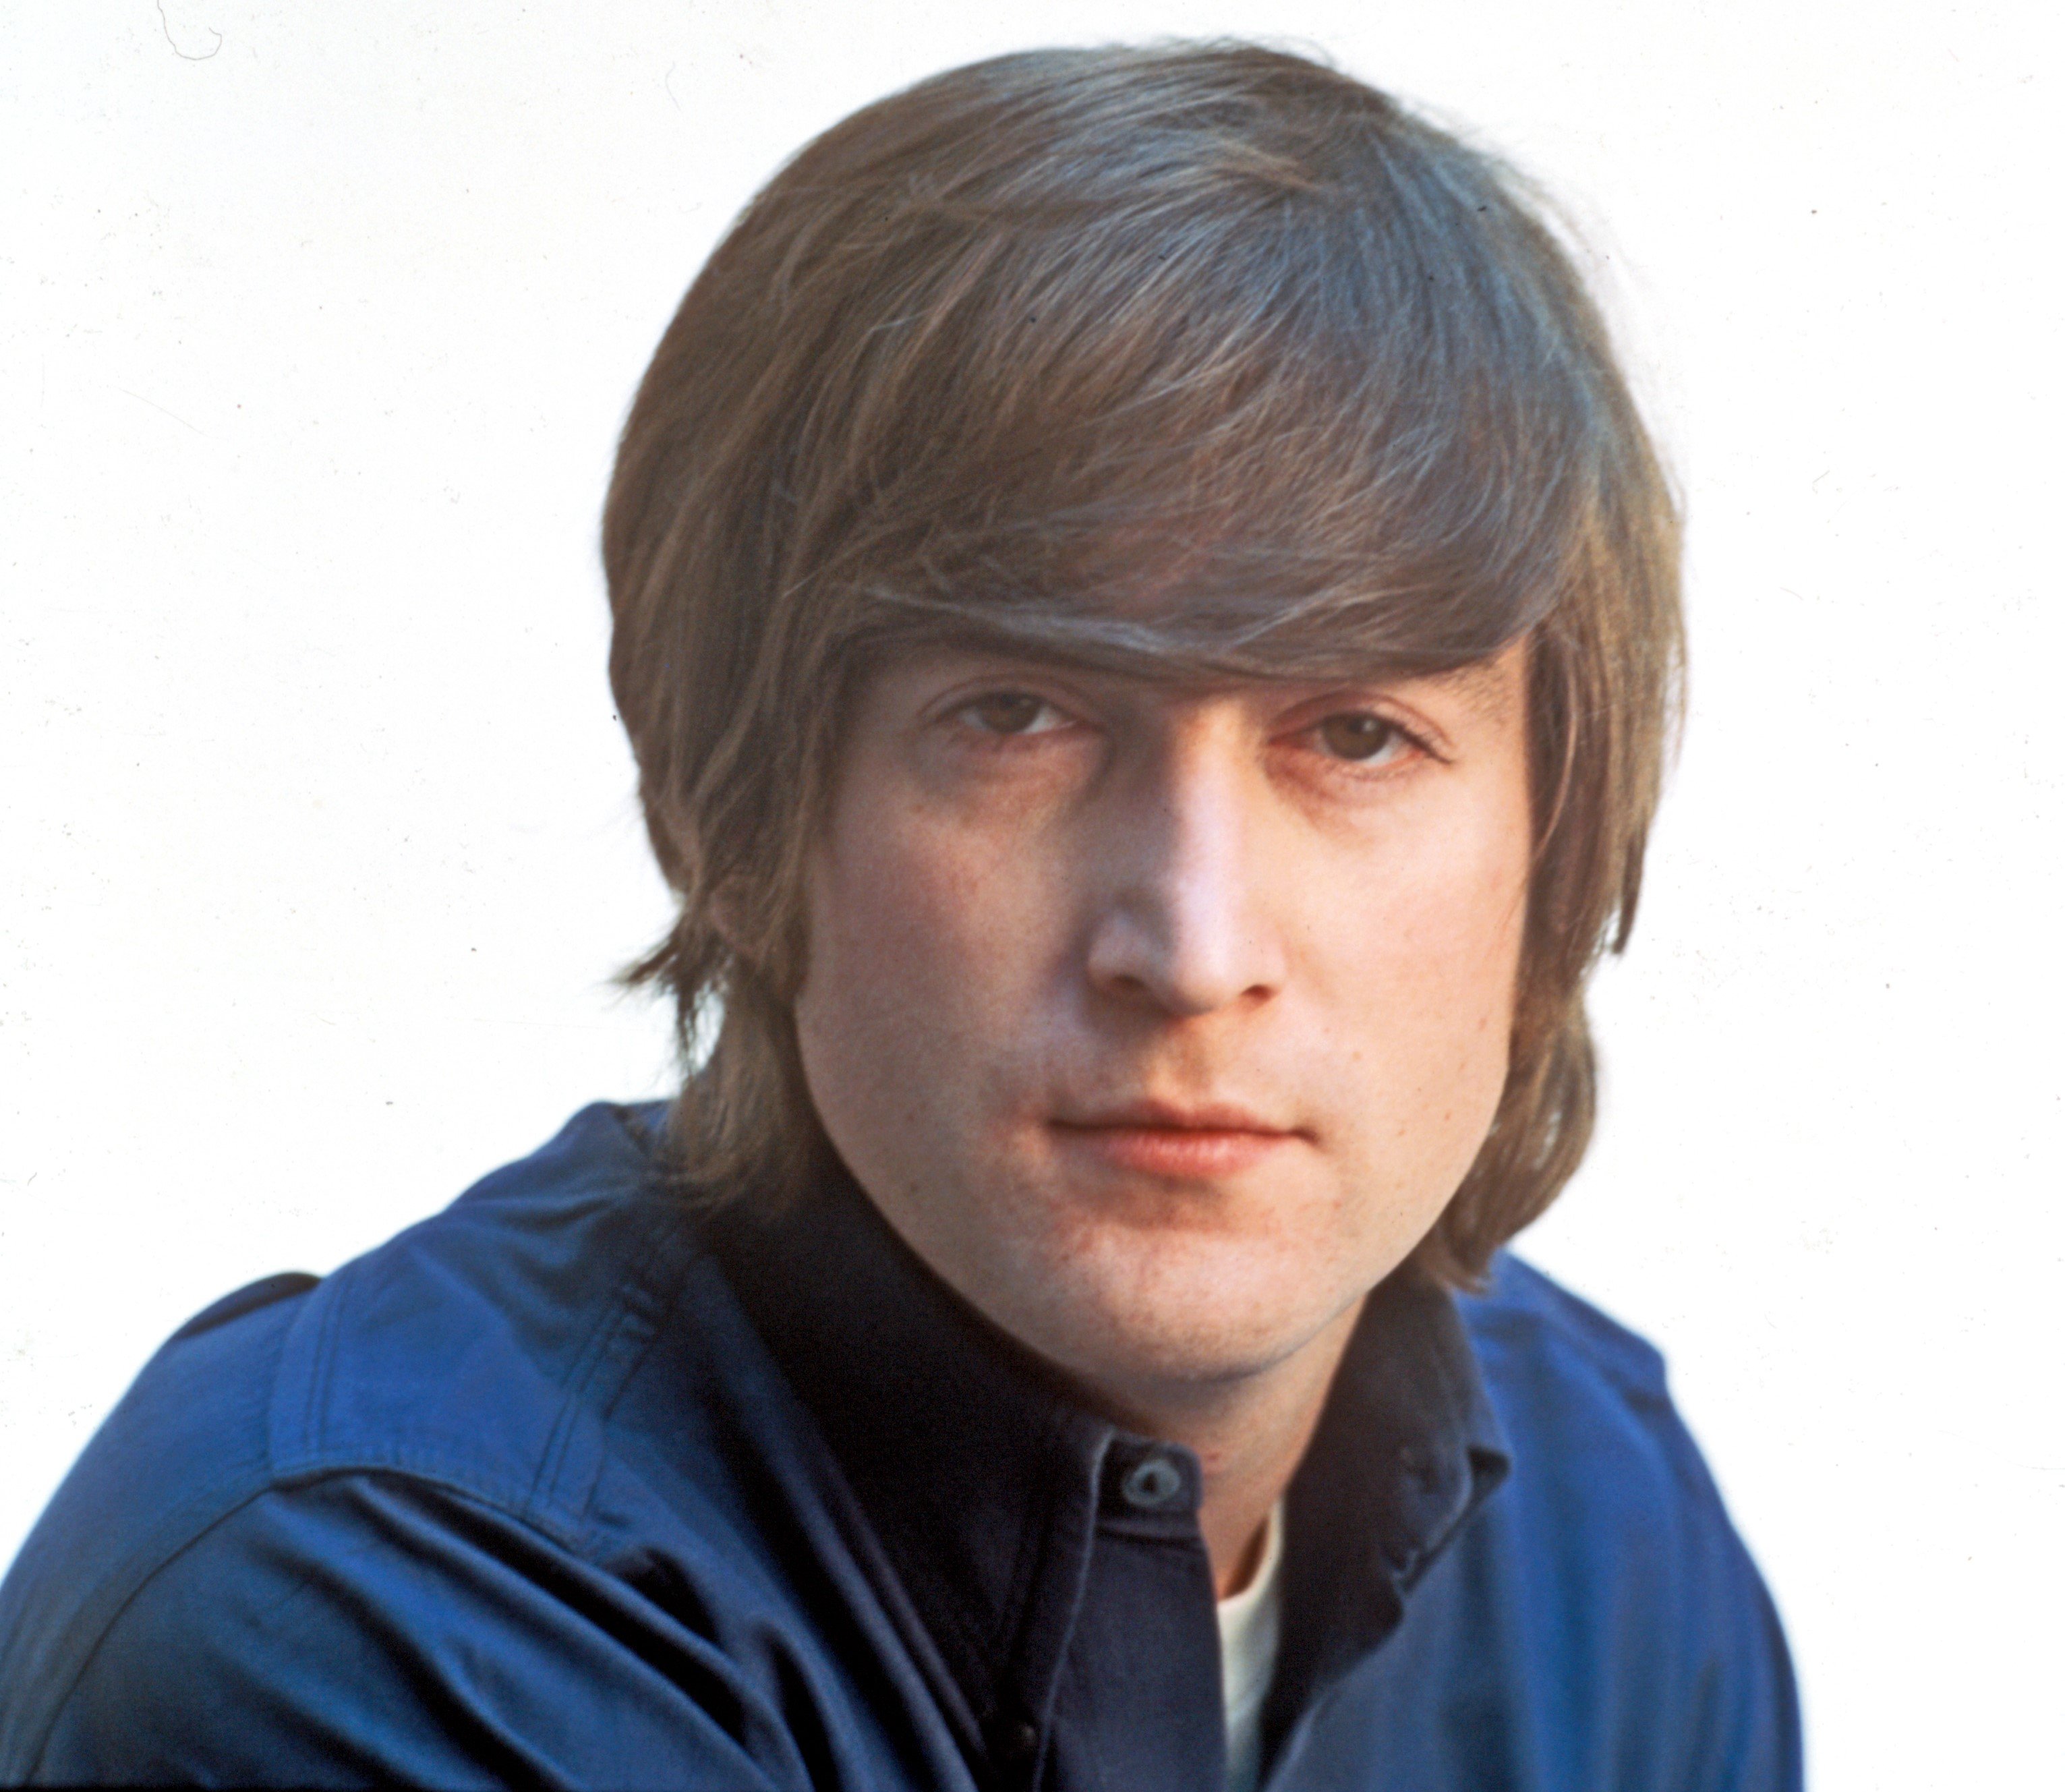 John Lennon wearing blue